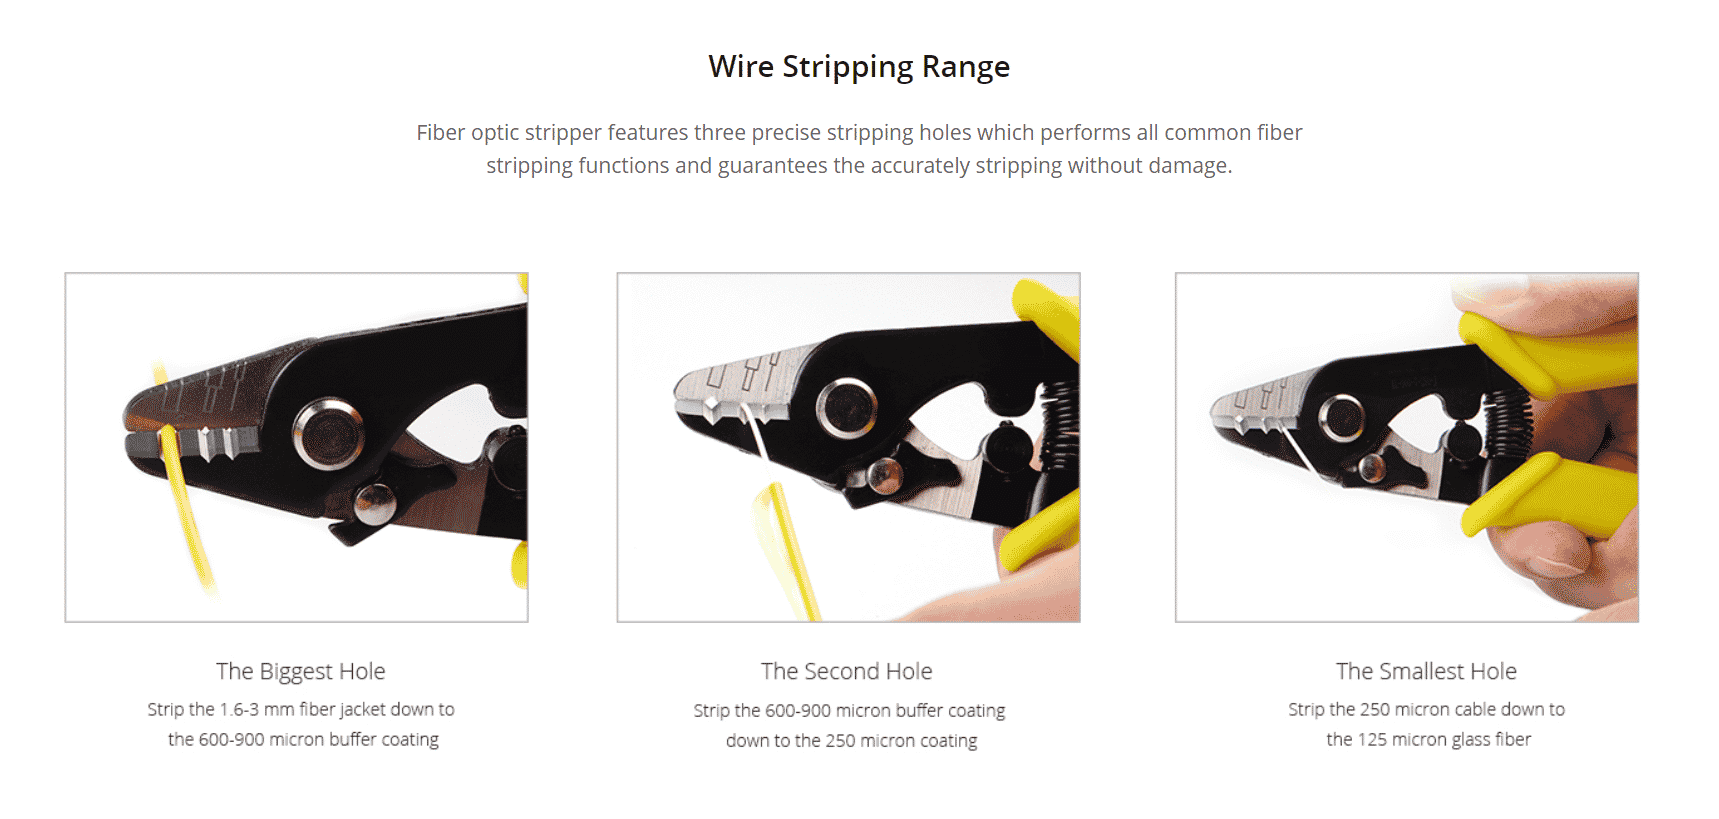 Wire Stripping Range